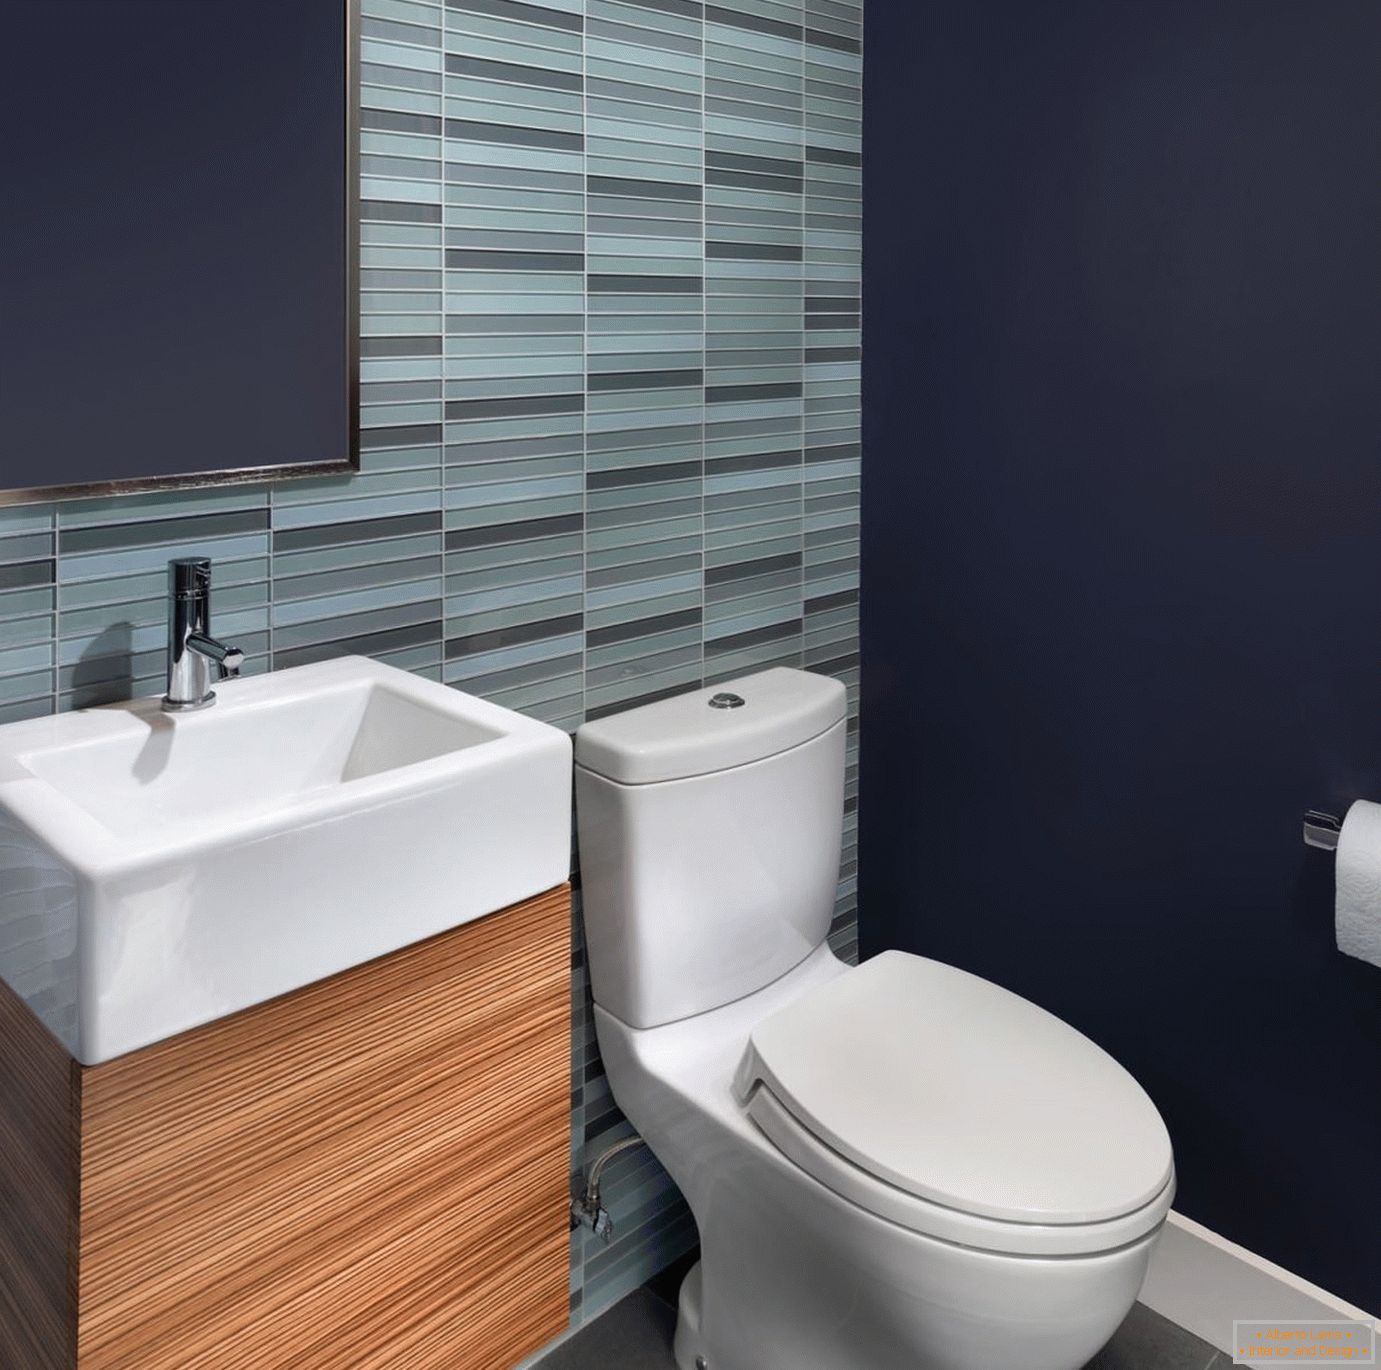 Grau und blau im Design der Toilette